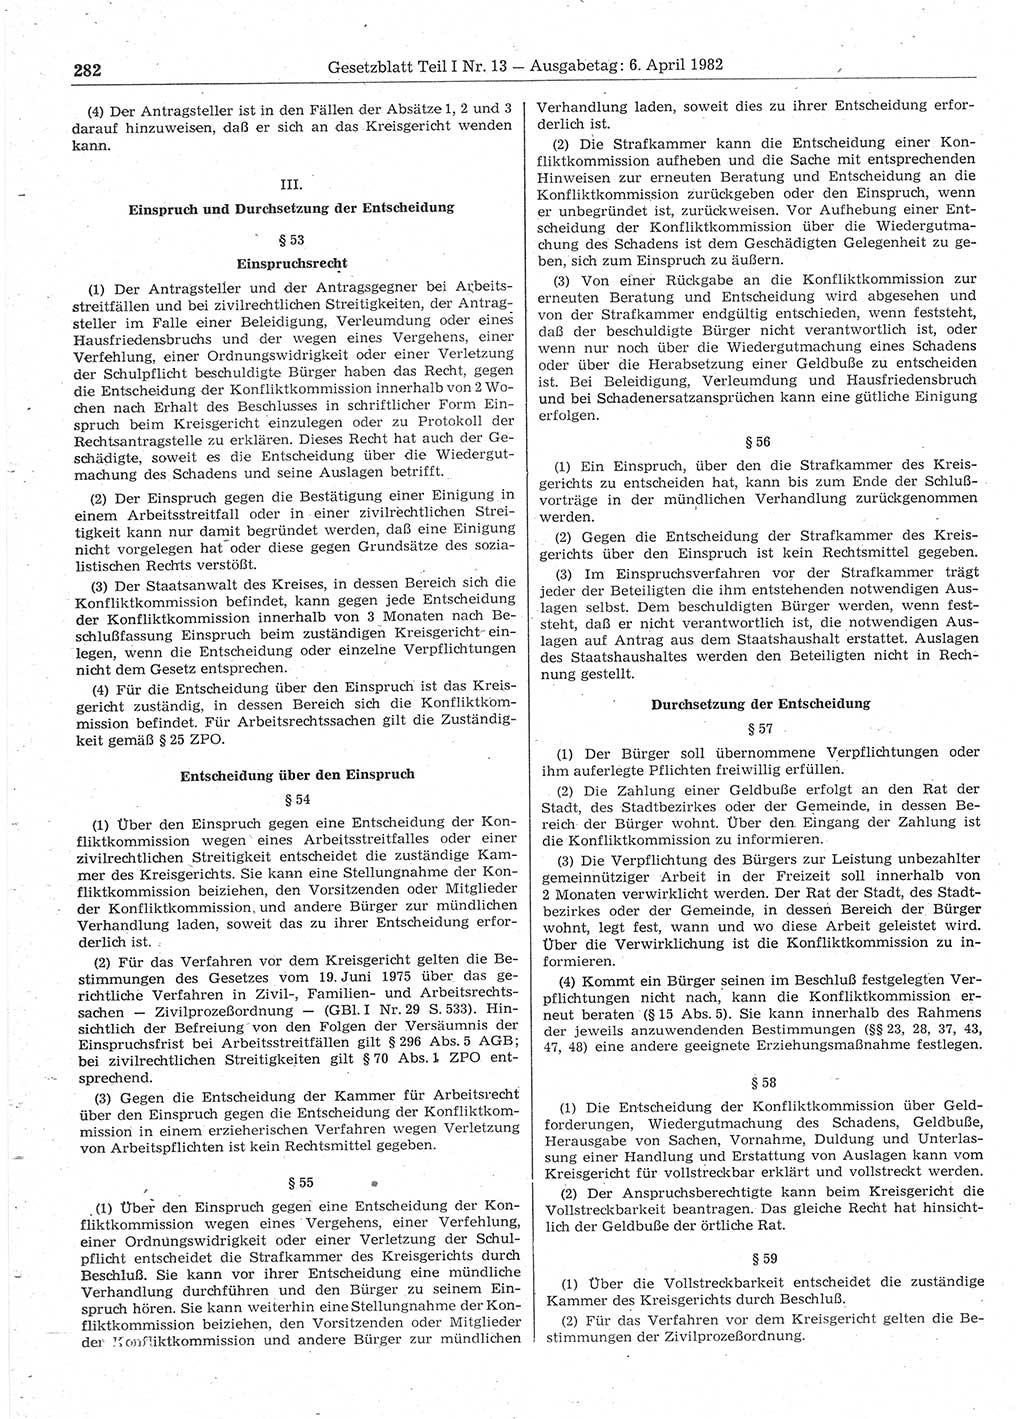 Gesetzblatt (GBl.) der Deutschen Demokratischen Republik (DDR) Teil Ⅰ 1982, Seite 282 (GBl. DDR Ⅰ 1982, S. 282)